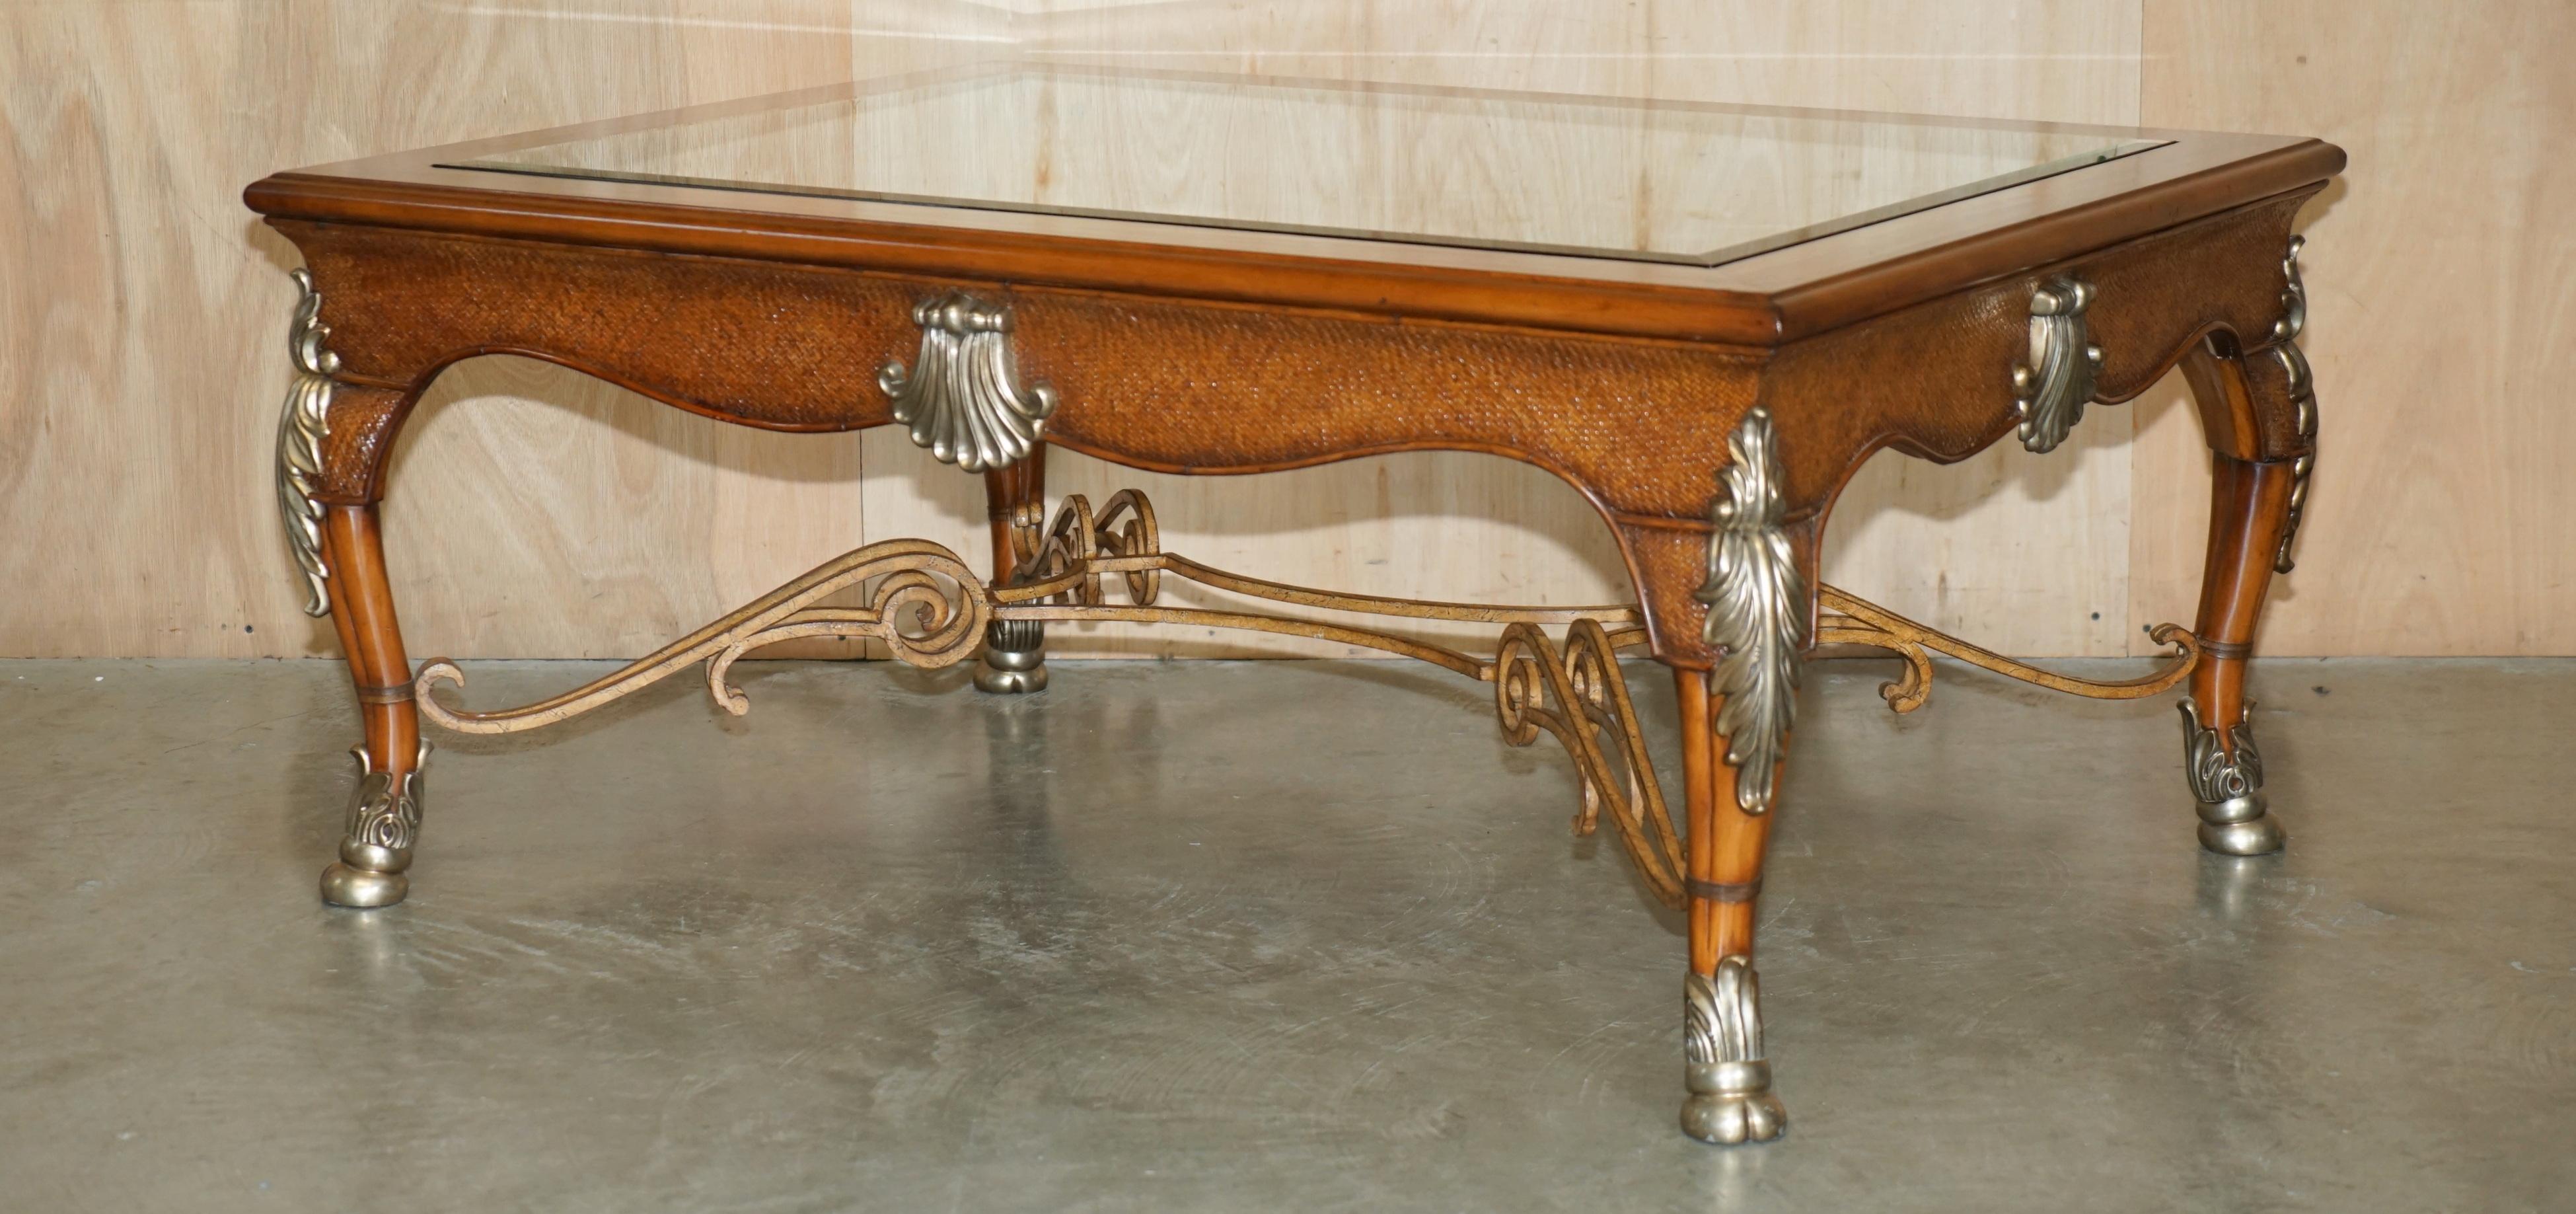 The House Antiques a le plaisir d'offrir à la vente cette table basse absolument exquise, de très grande taille, de la collection Thomasville Safari, qui fait partie d'une grande suite. 

J'ai une assez belle suite de ce mobilier Thomasville pour